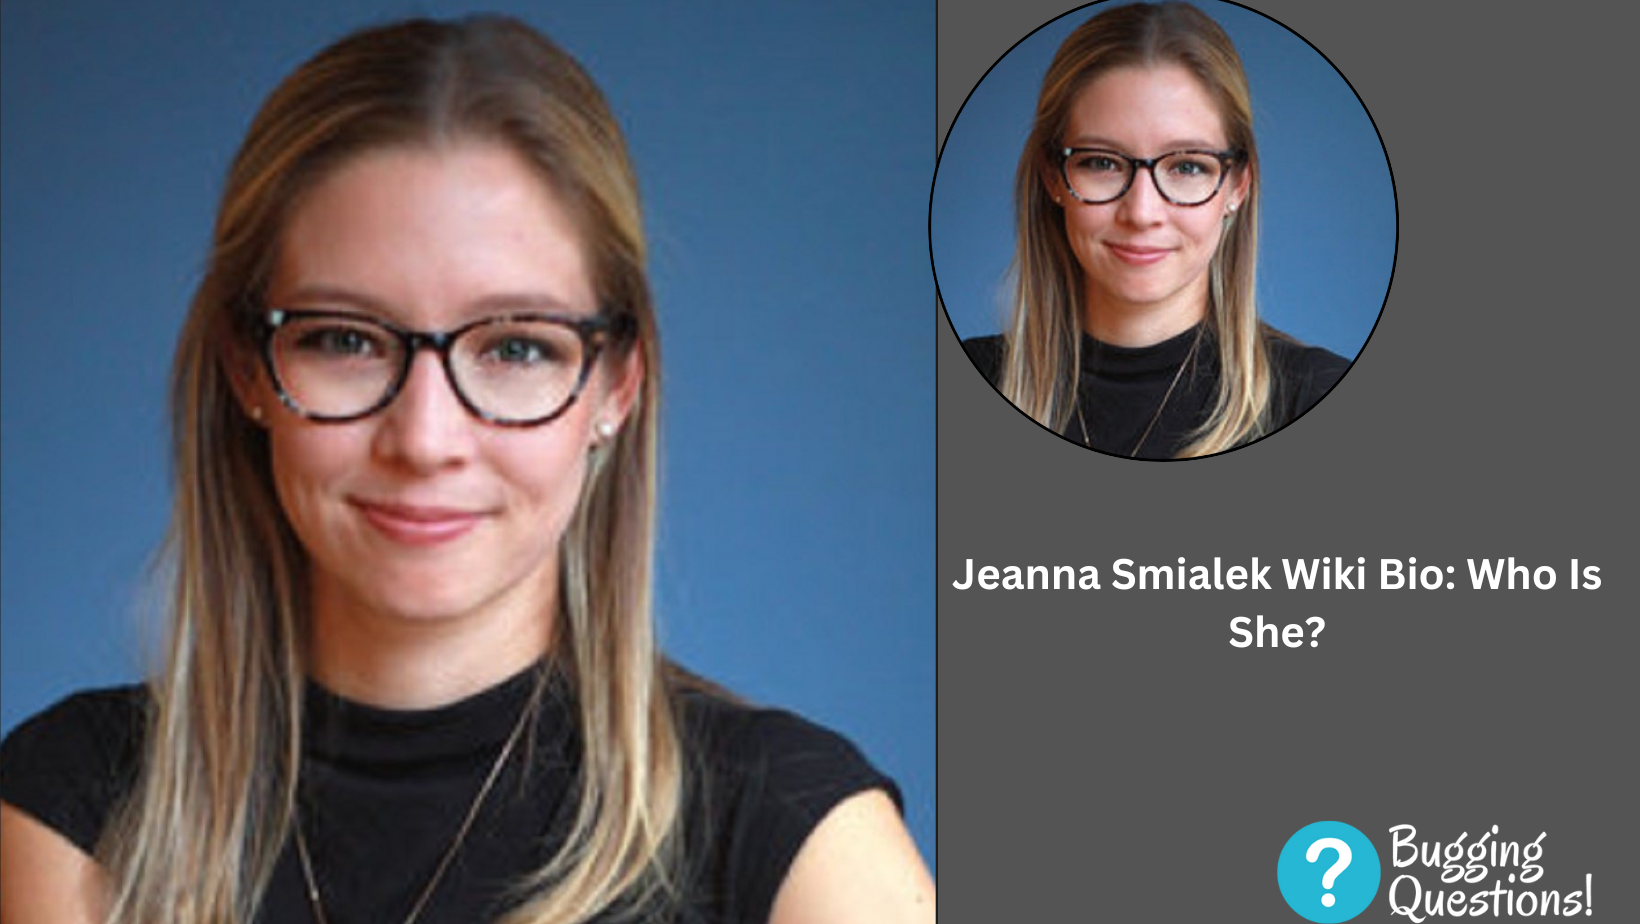 Jeanna Smialek Wiki Bio: Who Is She?